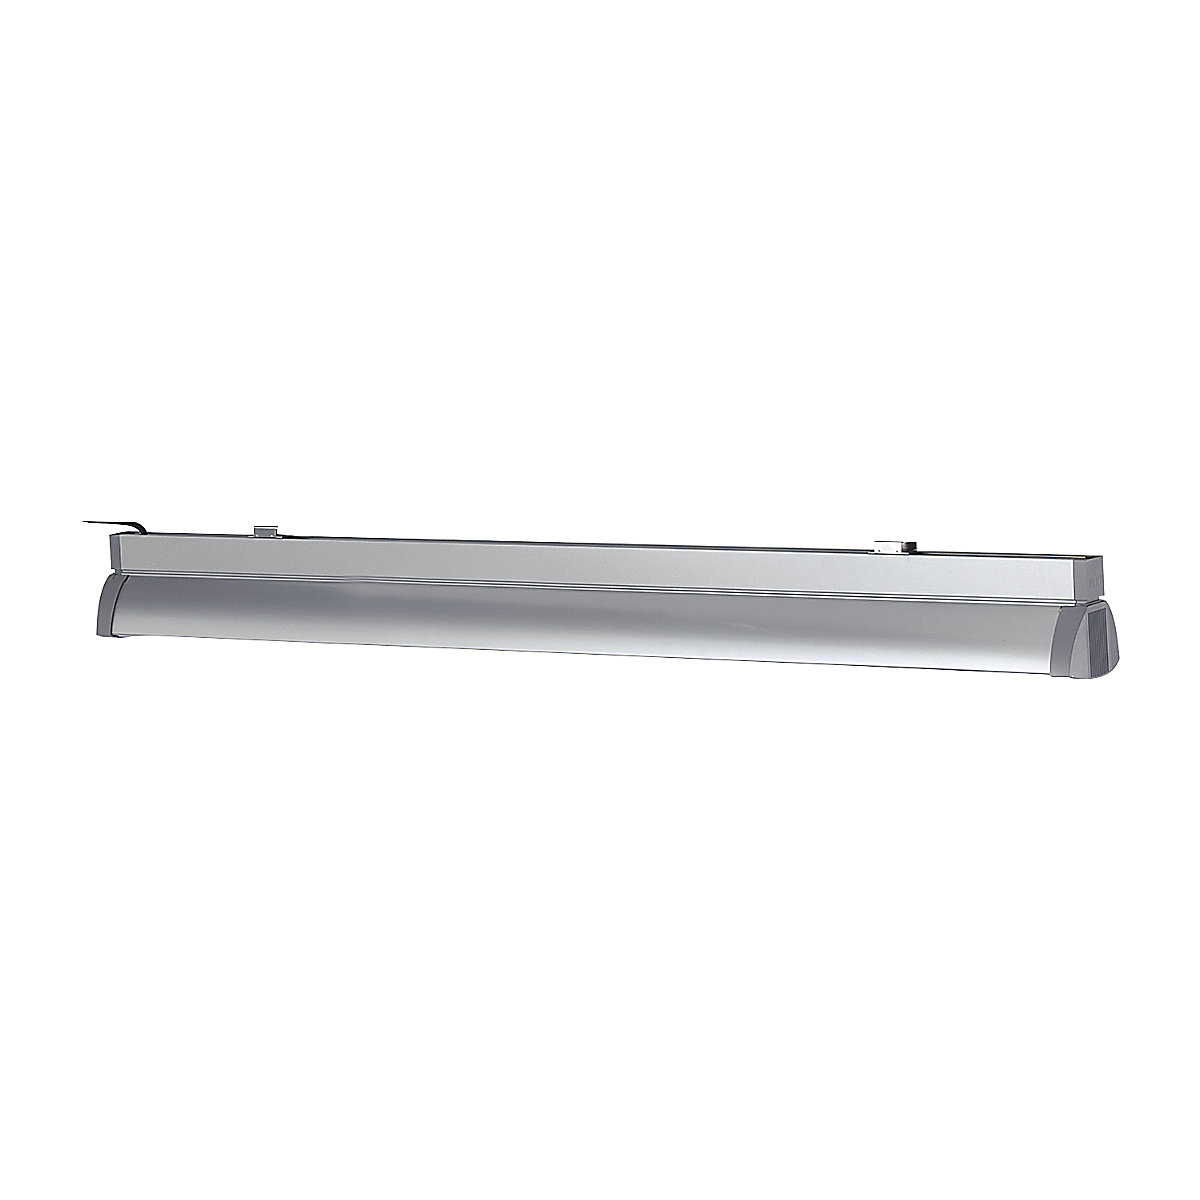 Lampada lunga da tavolo – RAU, 2 tubi fluorescenti da 54 W, lunghezza 1200 mm, per larghezza tavolo di 1200 mm-4